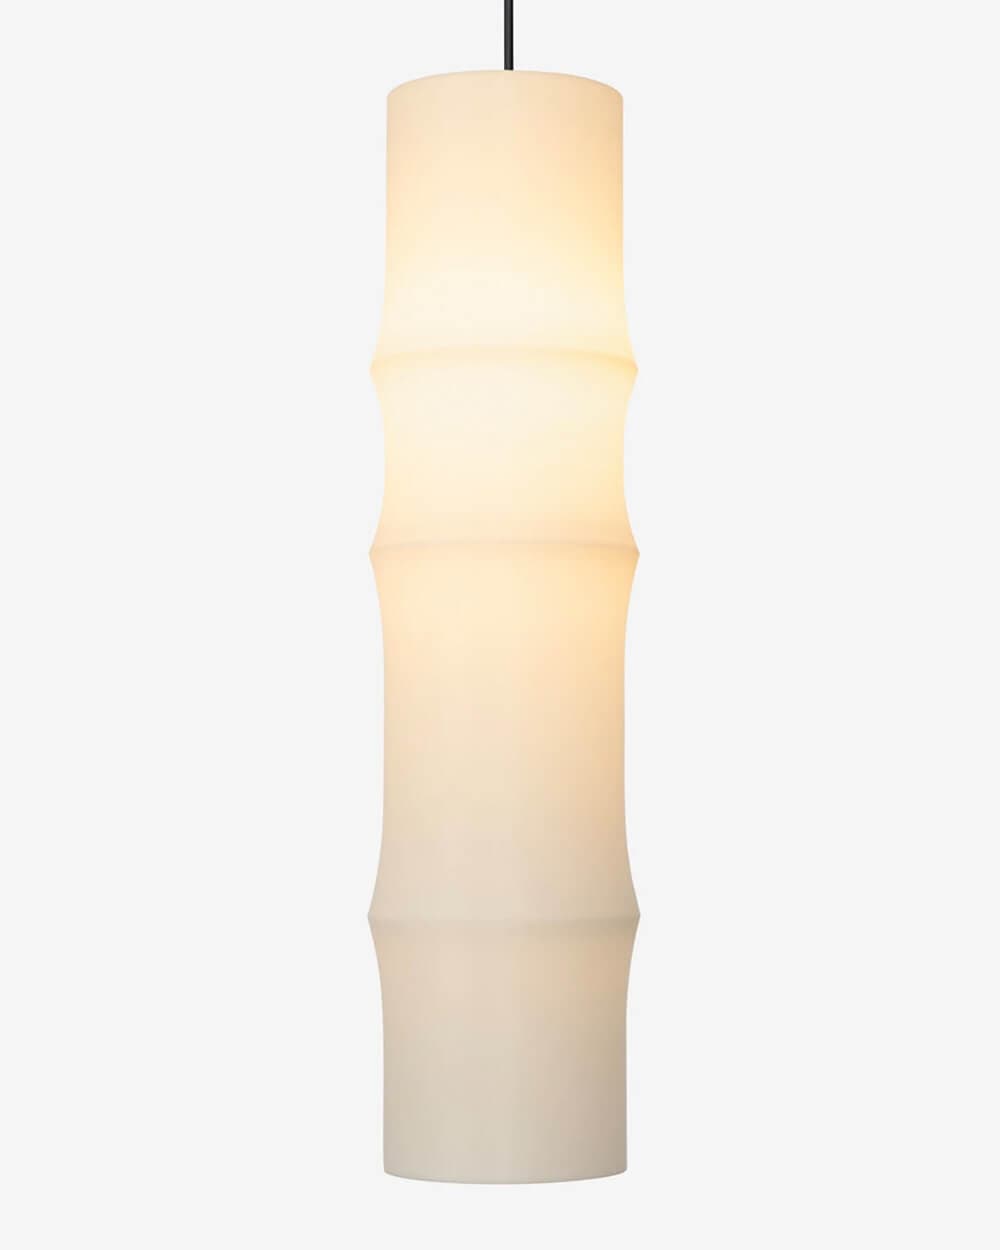 Gantry Bamboo Pendant Light